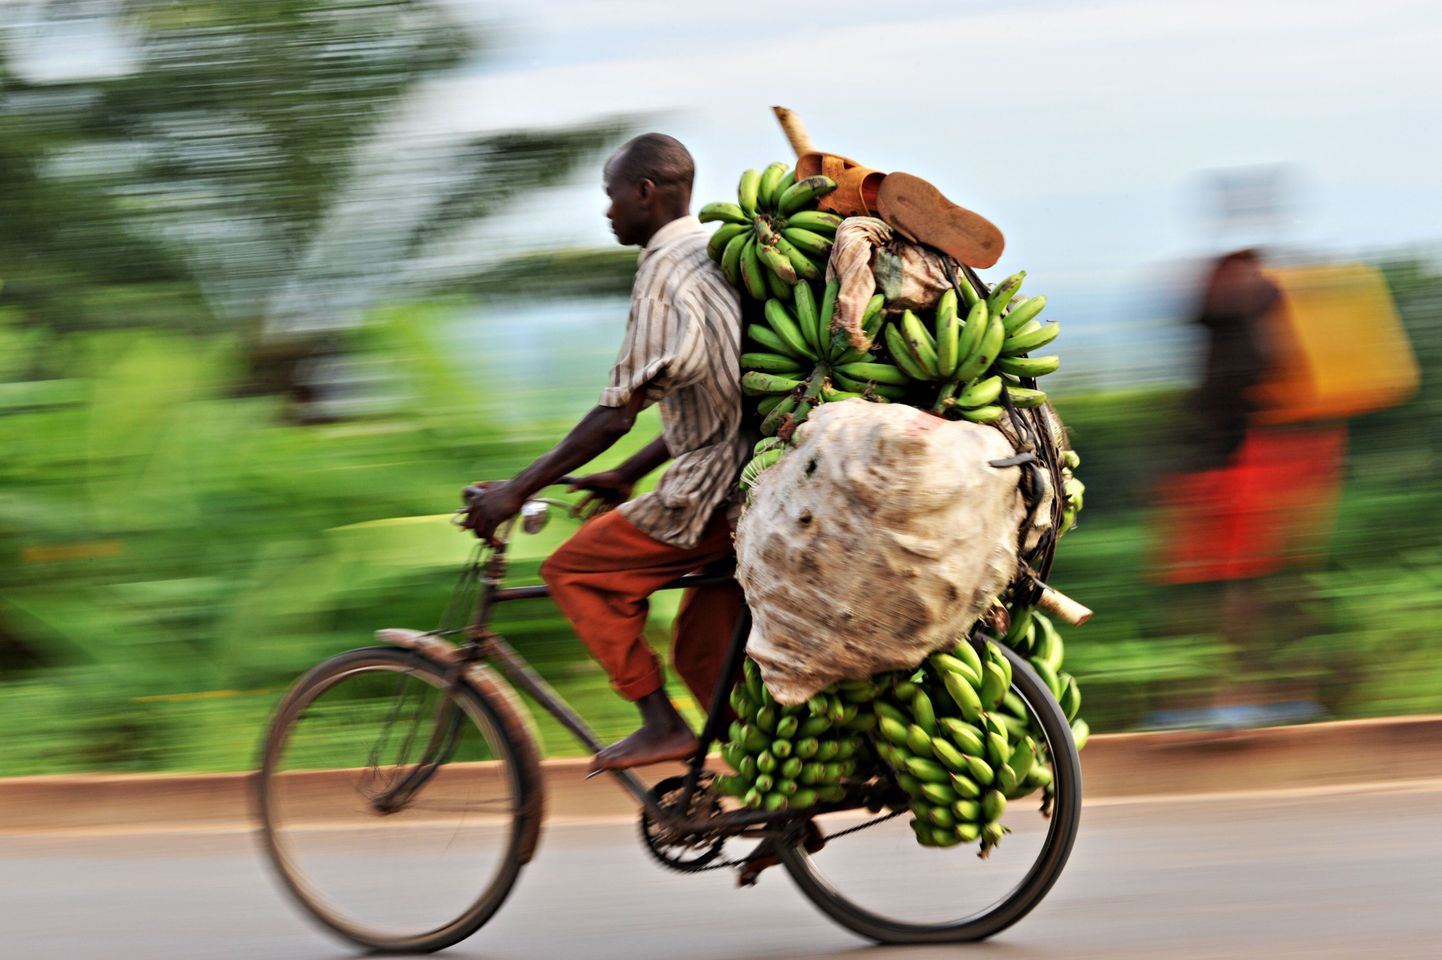 Banaane kokkuostnud mees Mosambiigis.